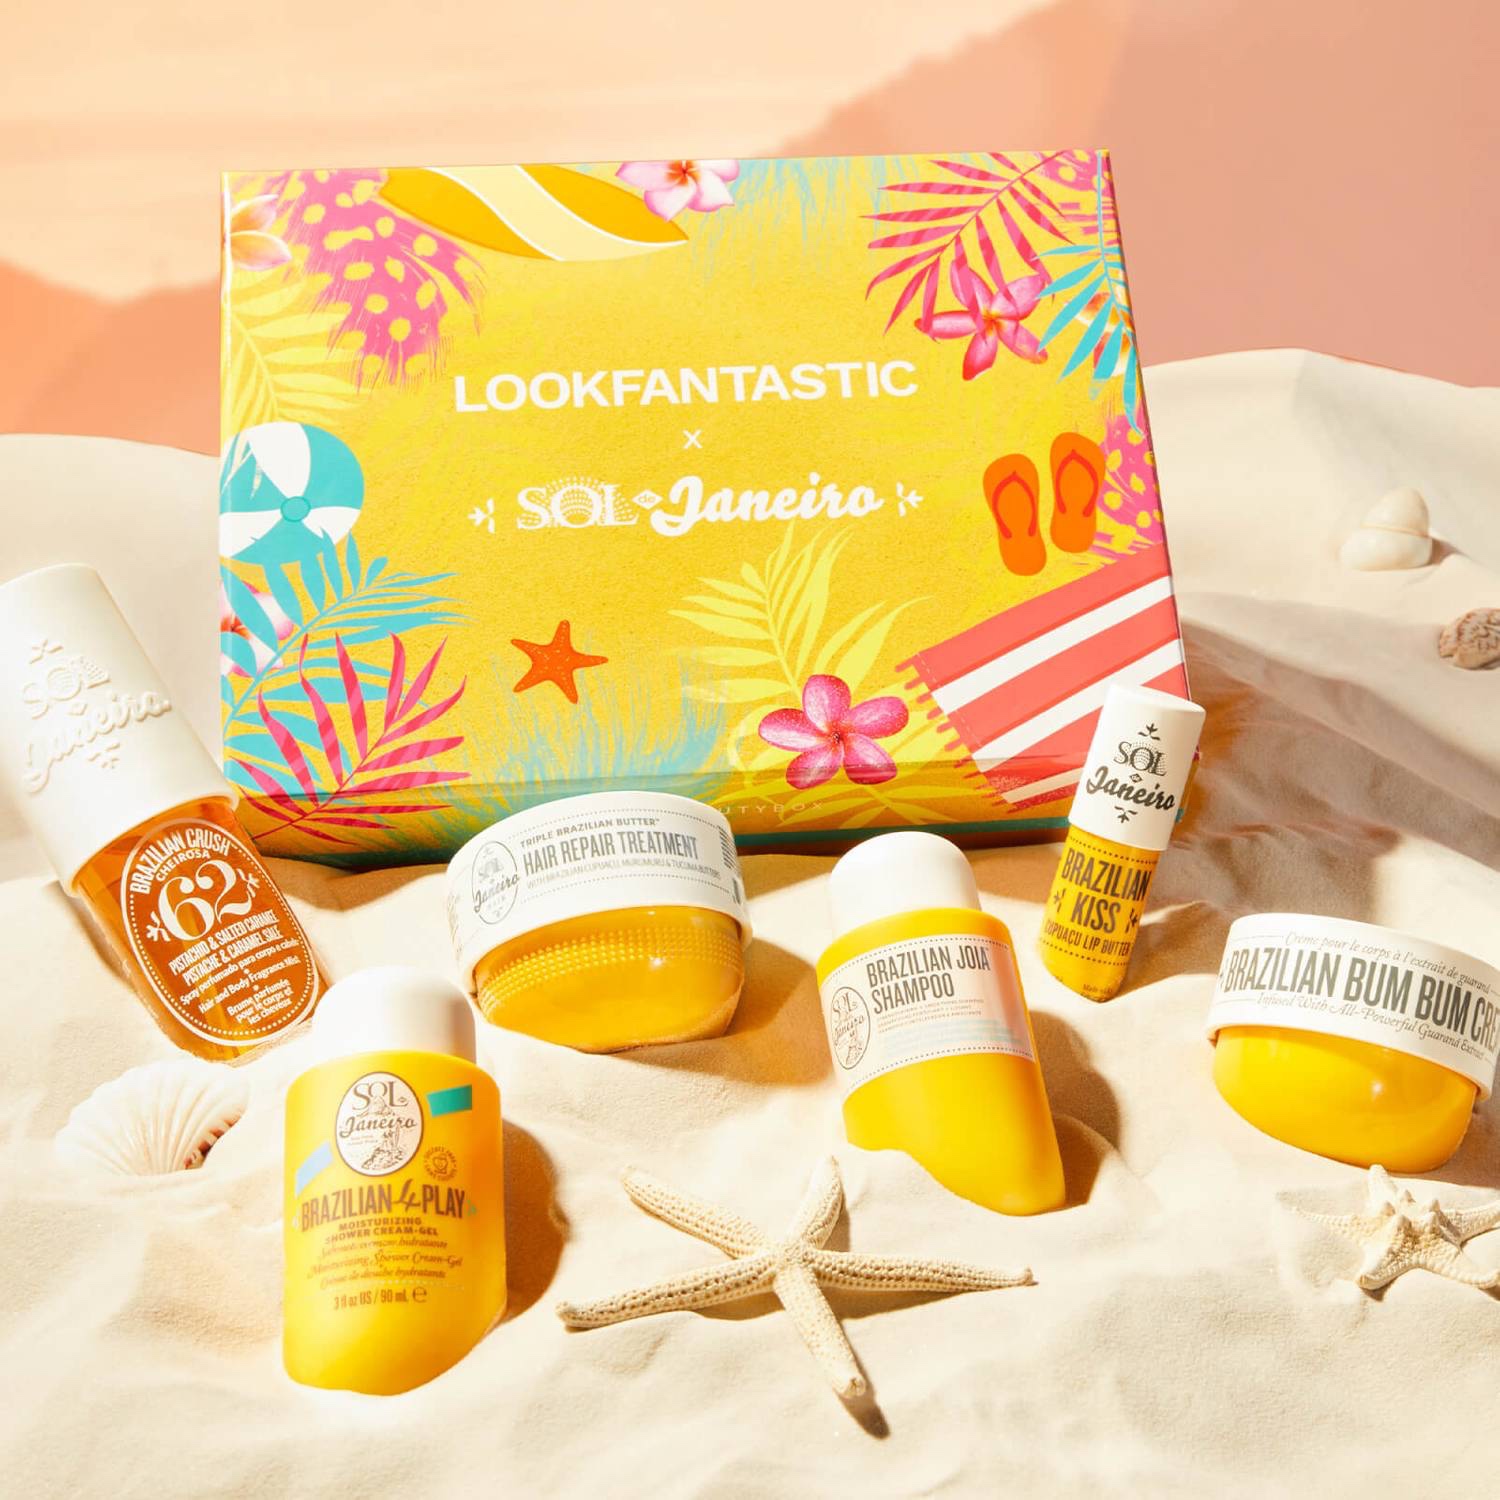 LookFantastic x Sol de Janeiro Limited Edition Box Contents